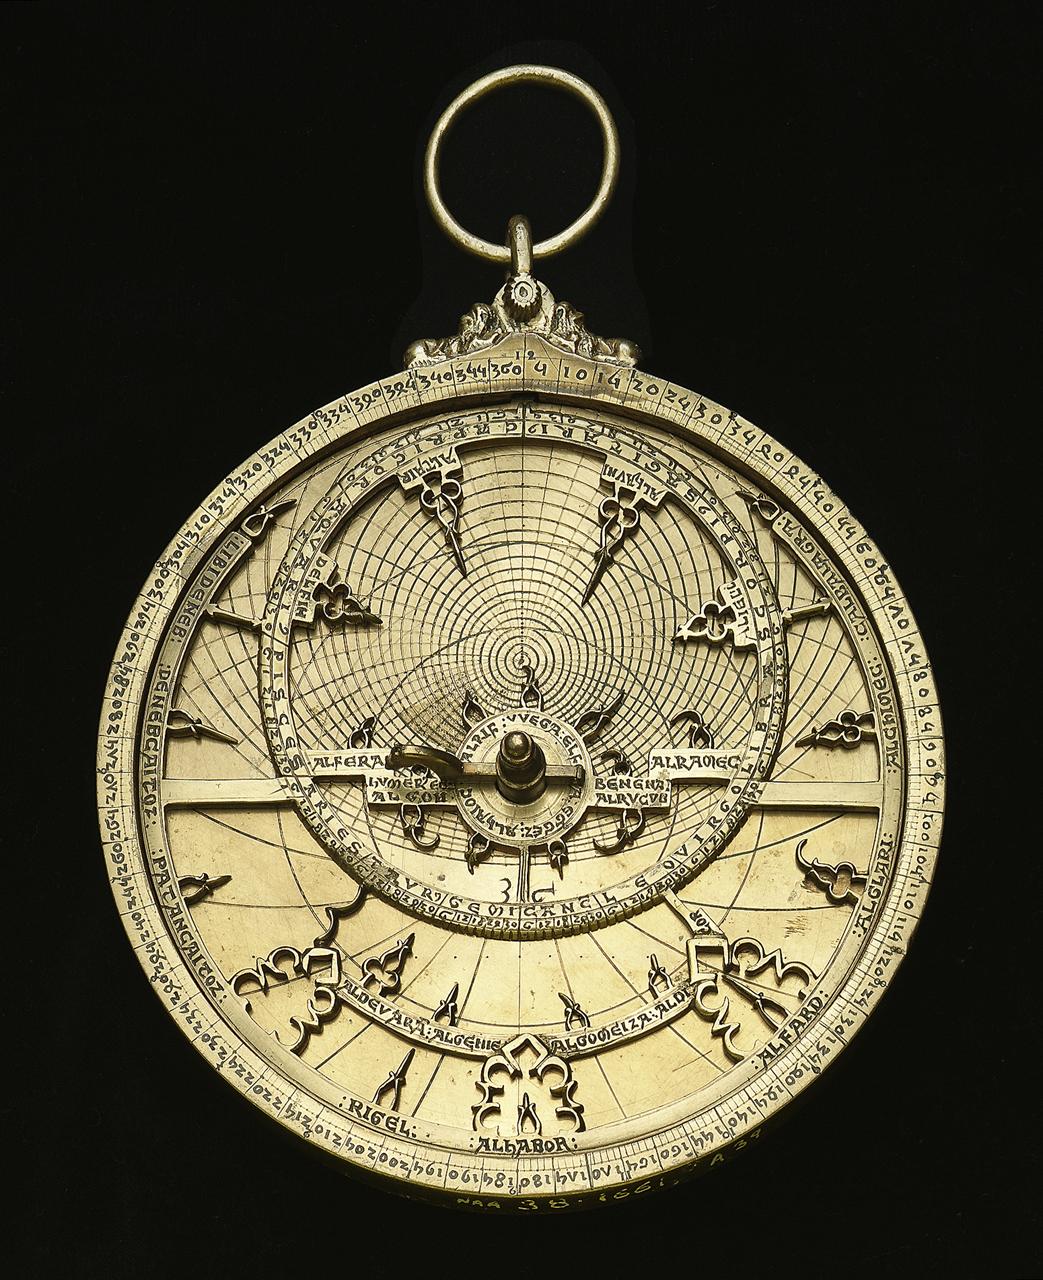 Caird astrolabe, c.1230